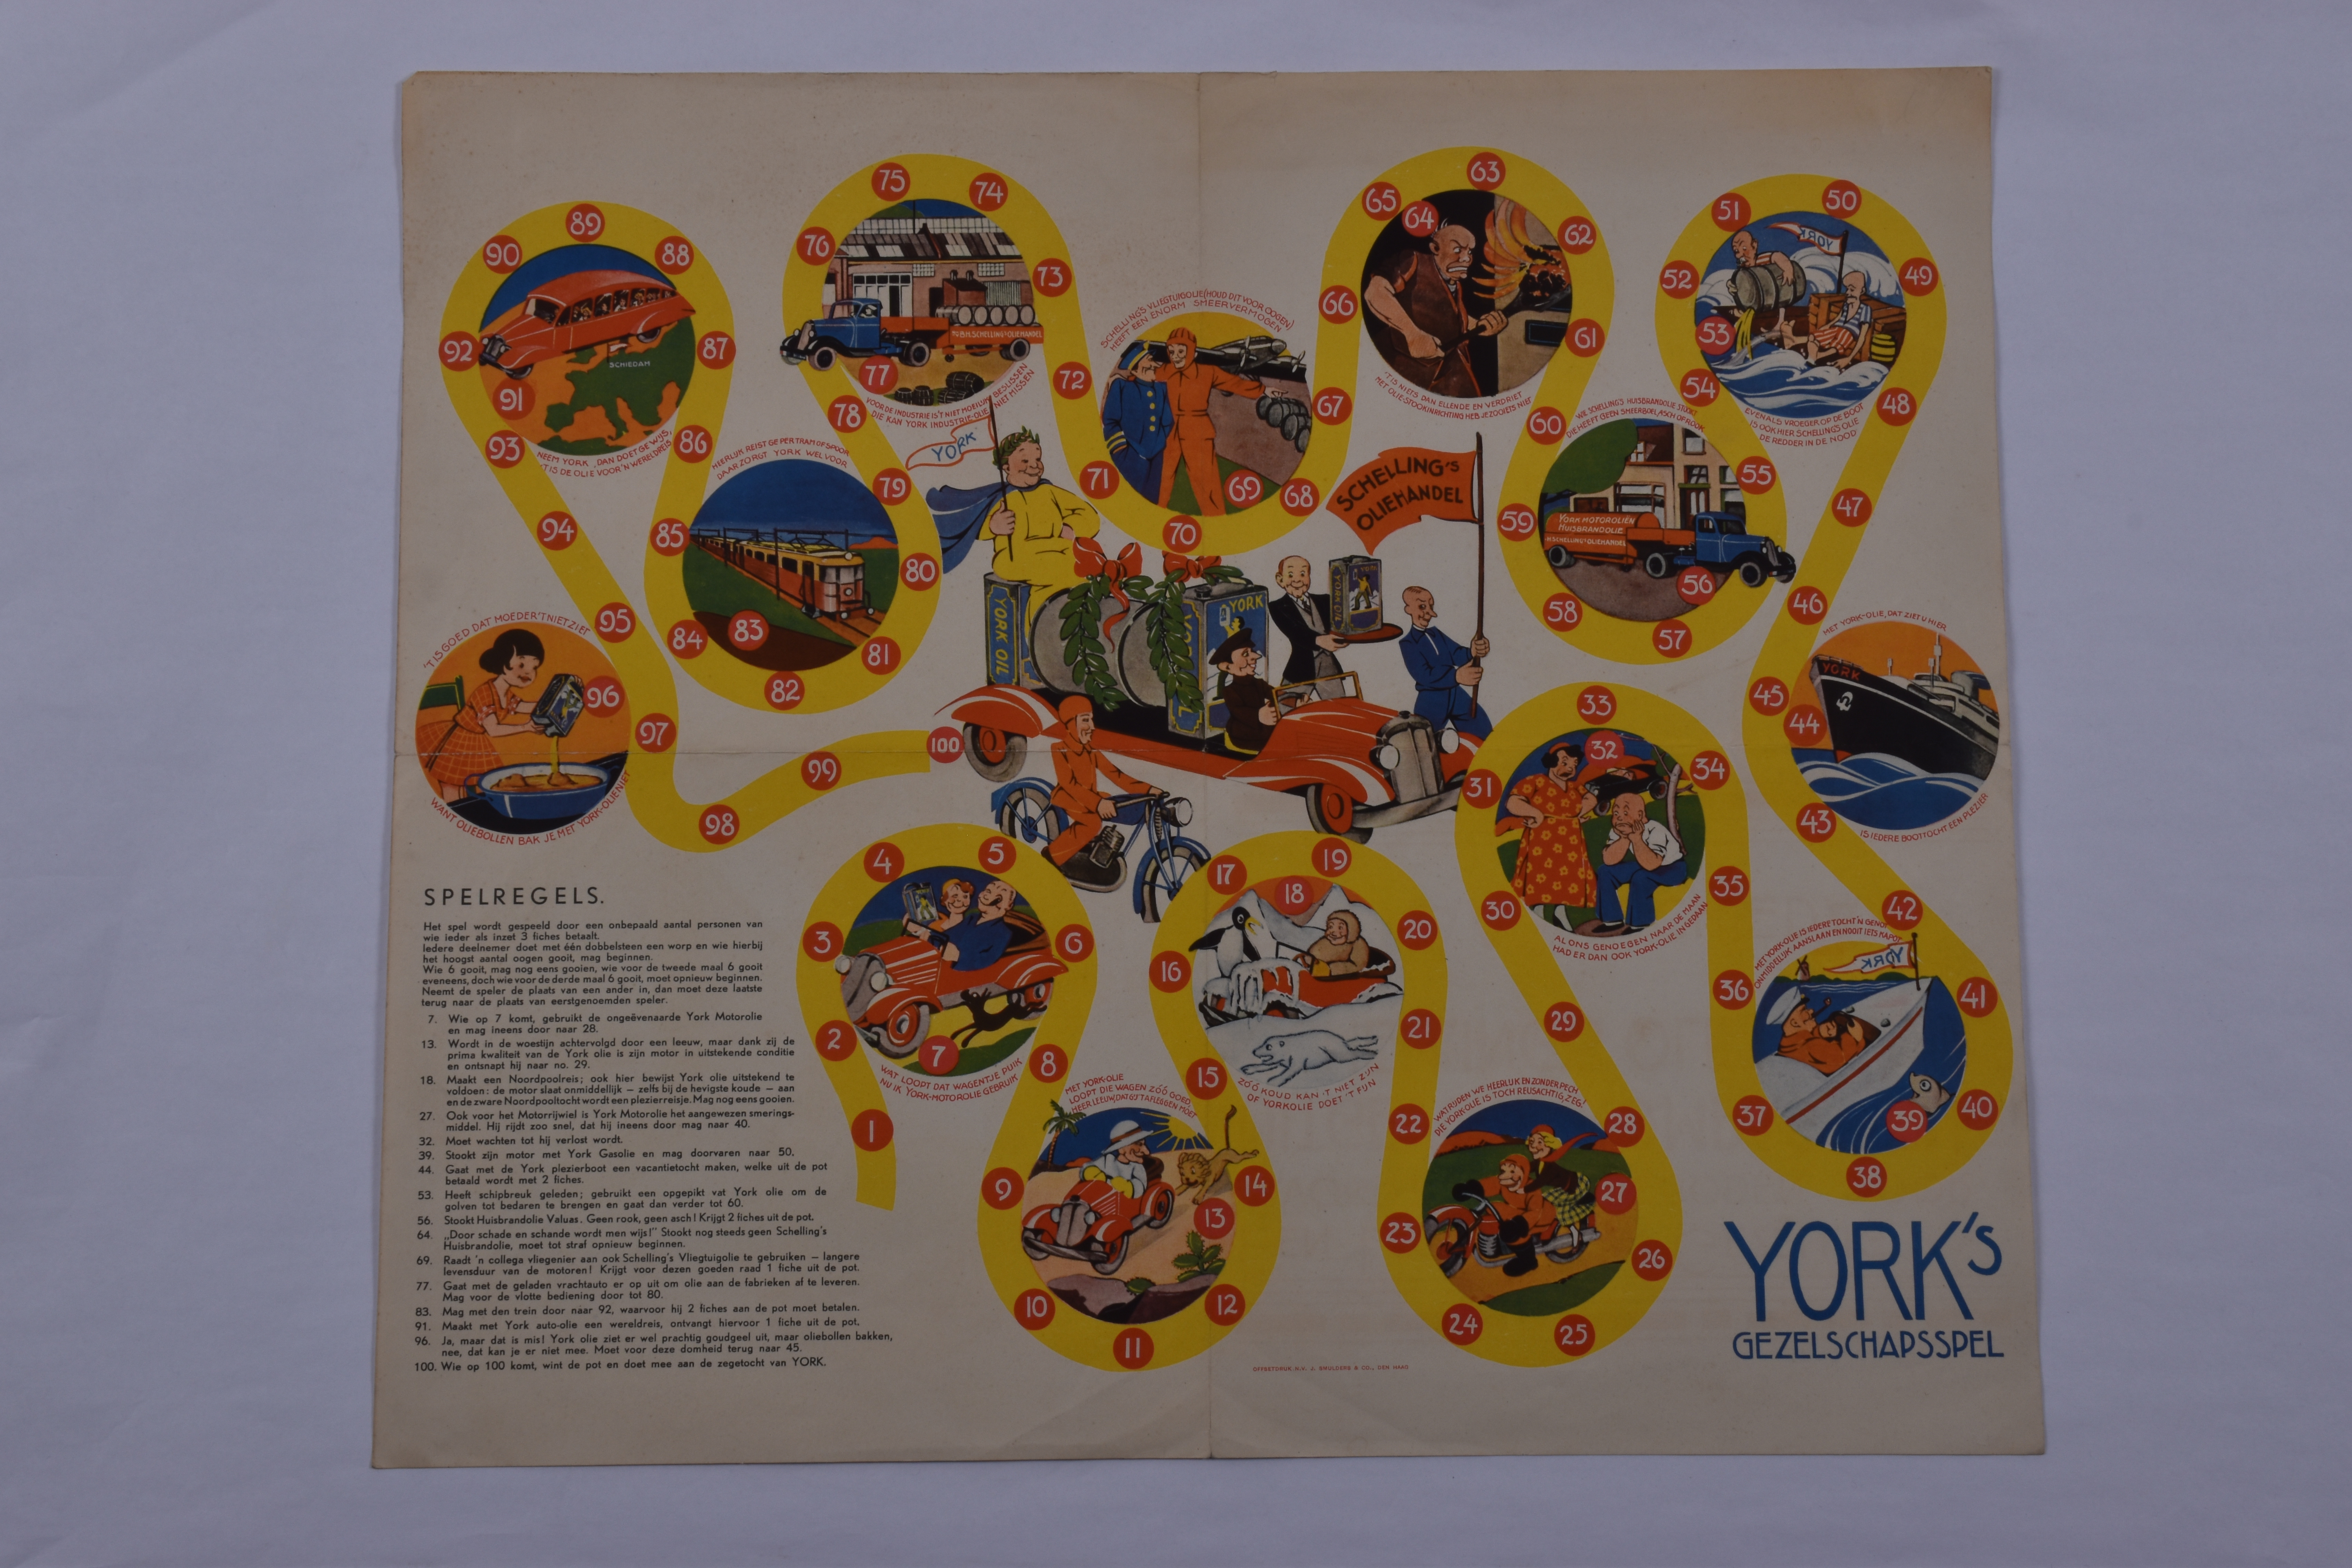 York's Gezelschapsspel